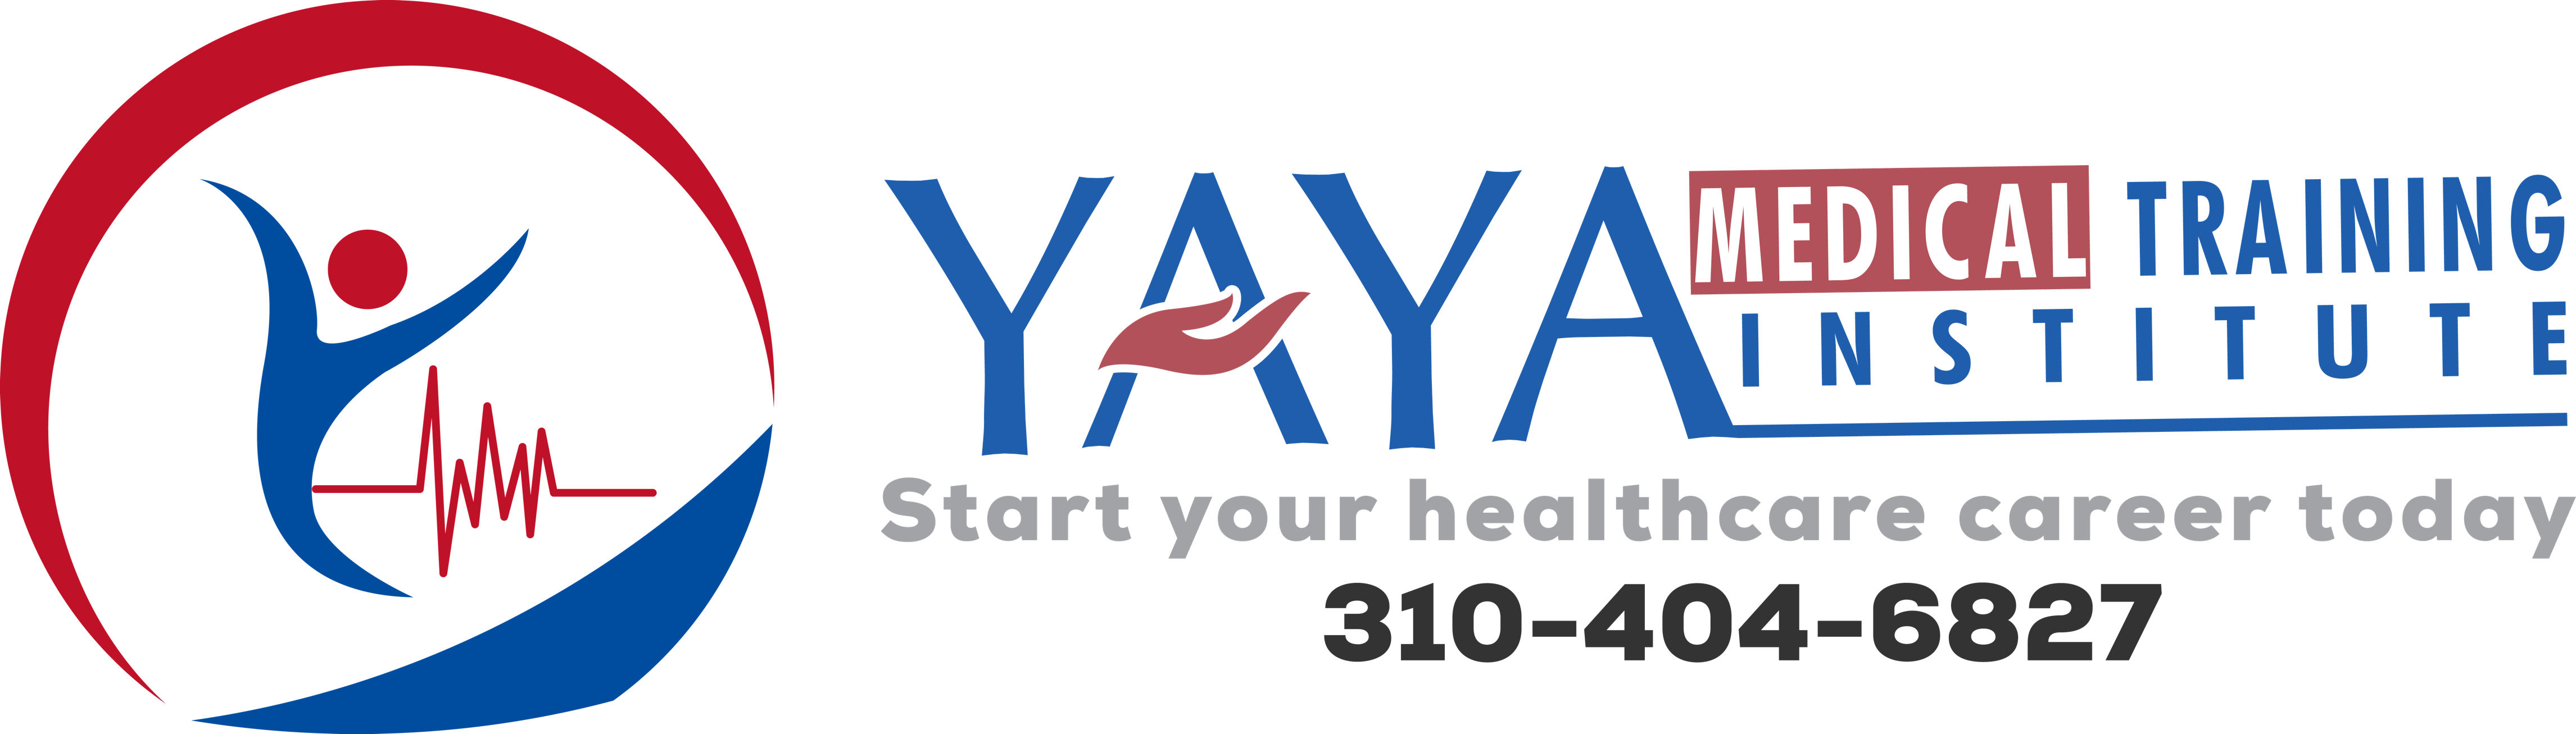 YAYA Medical Training Institute